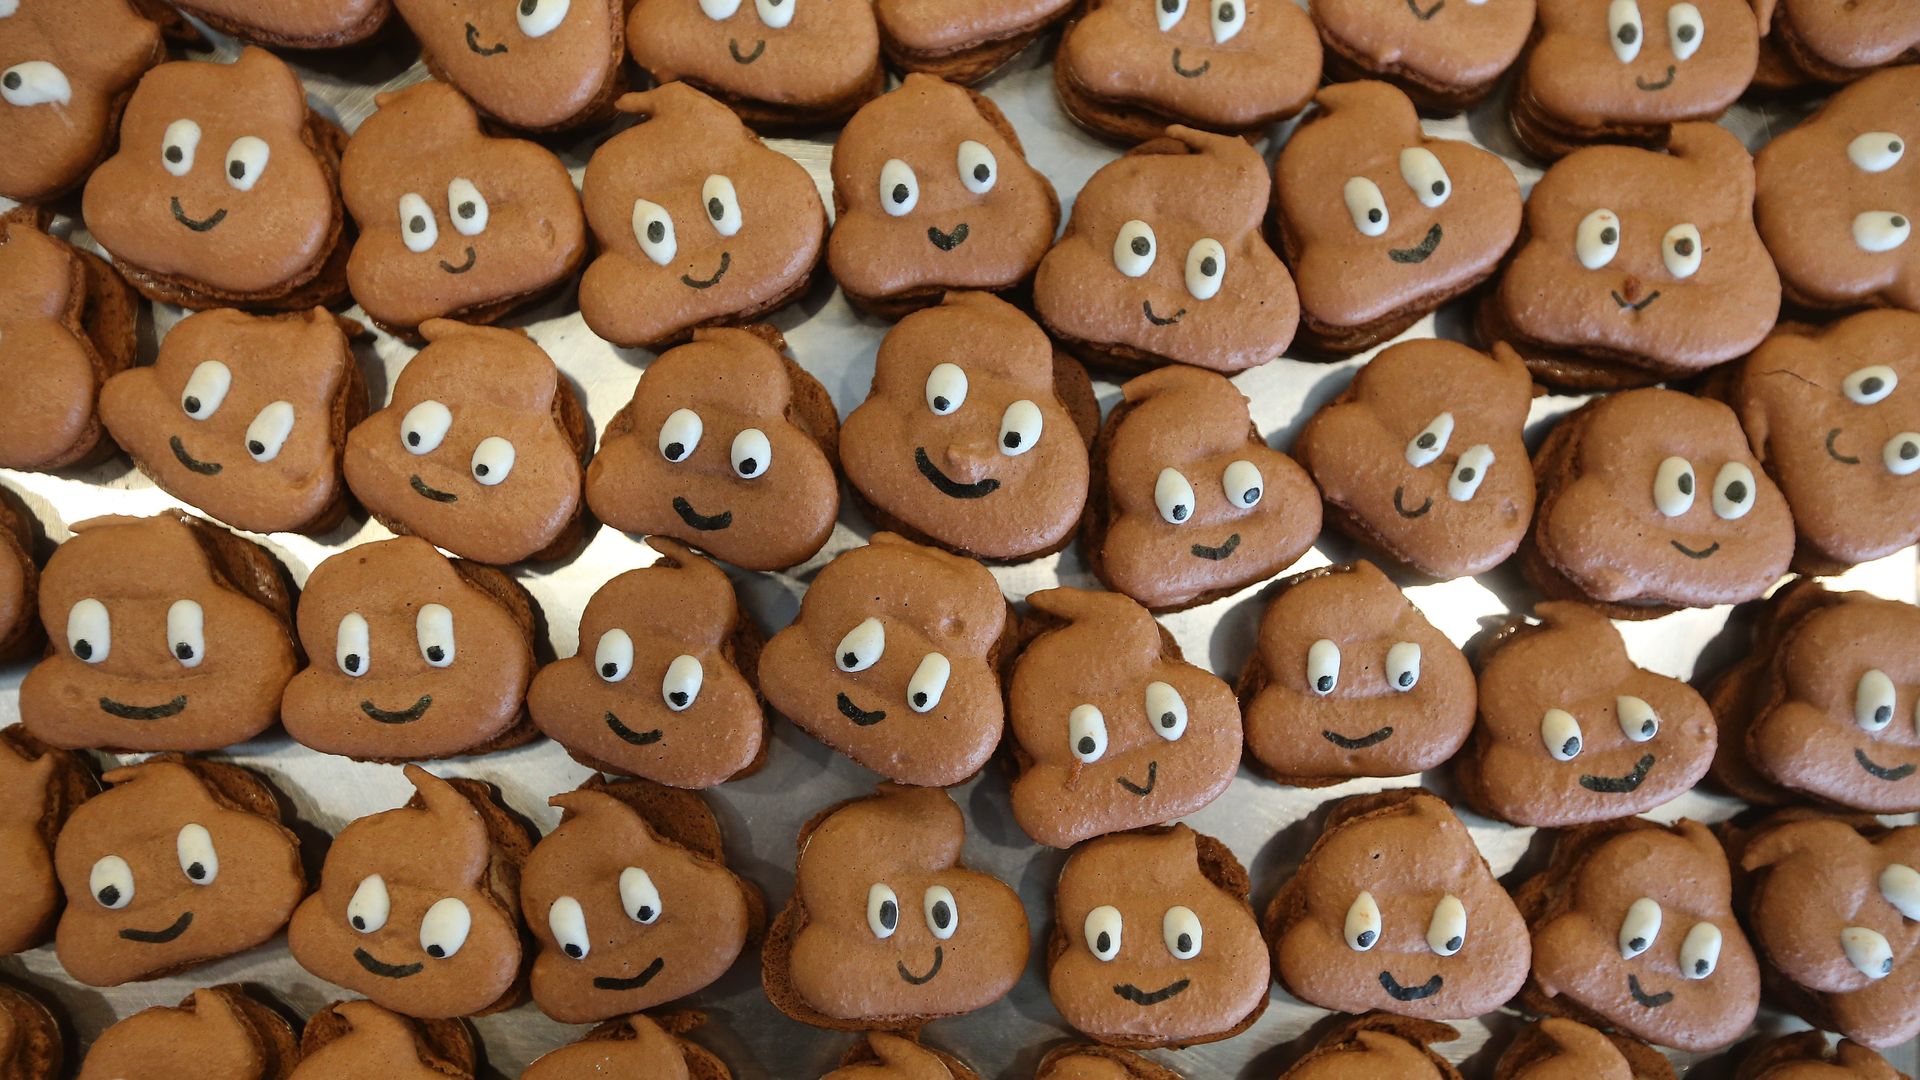 Macaroons in the shape of the poop emoji